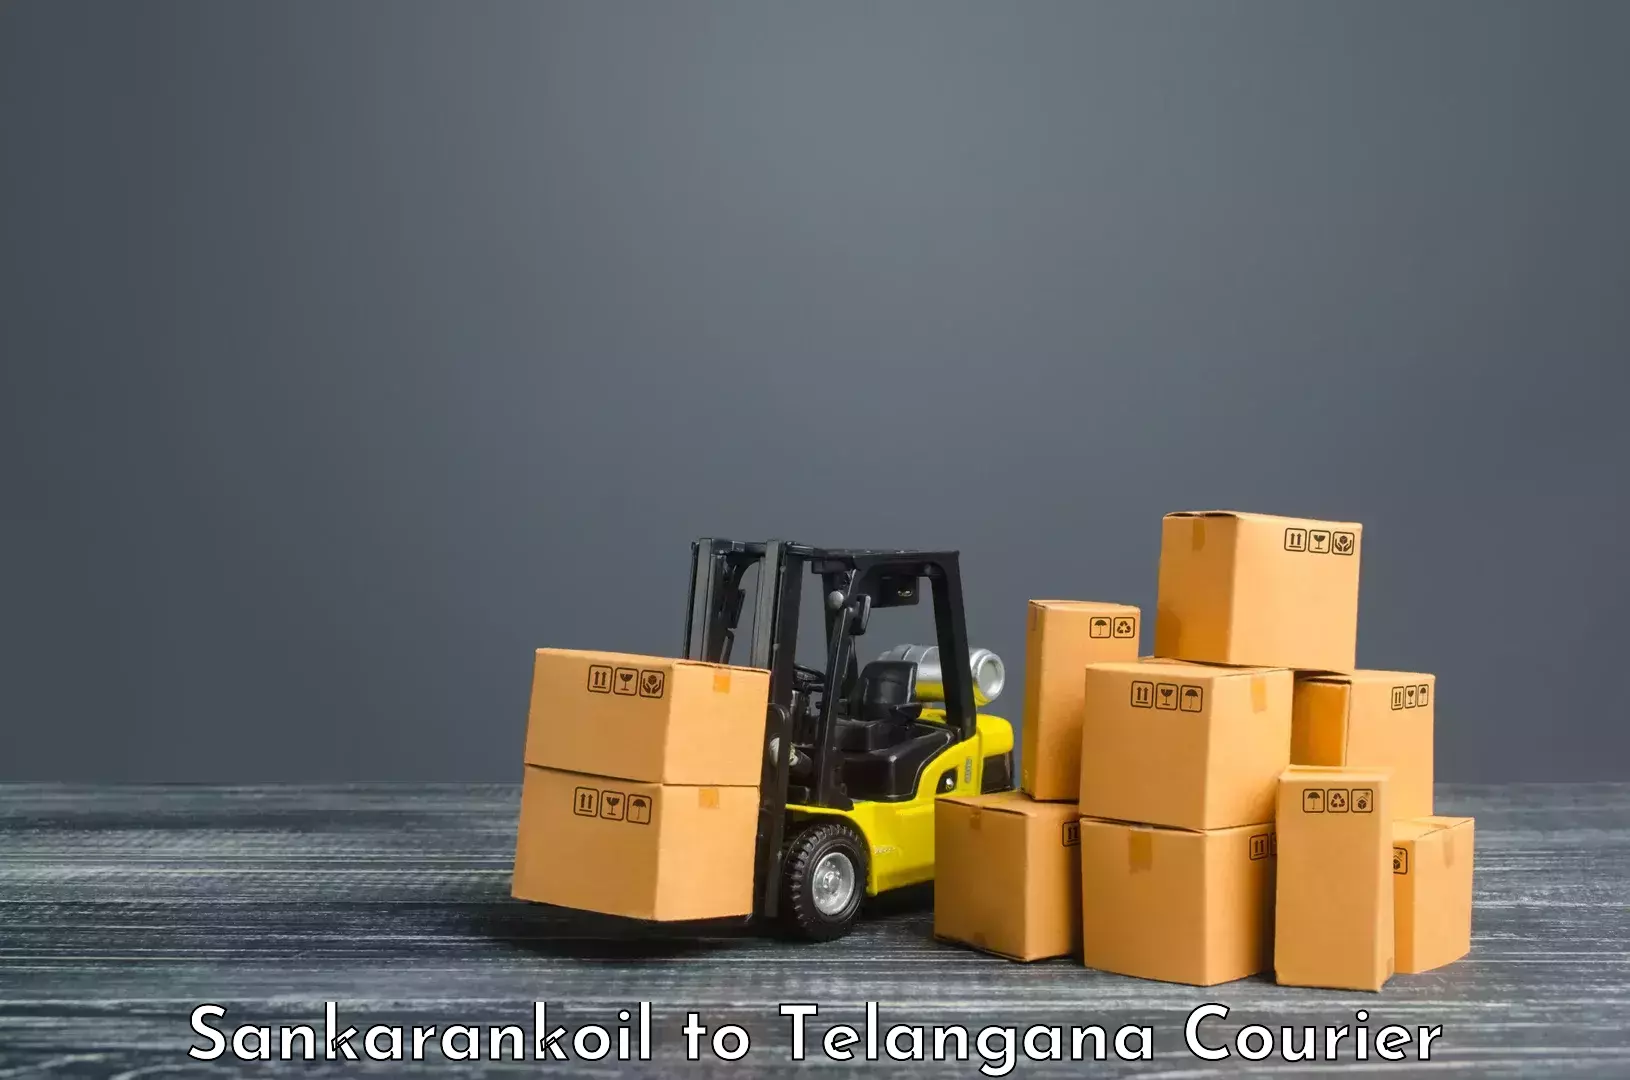 Courier service comparison Sankarankoil to Gollapalli